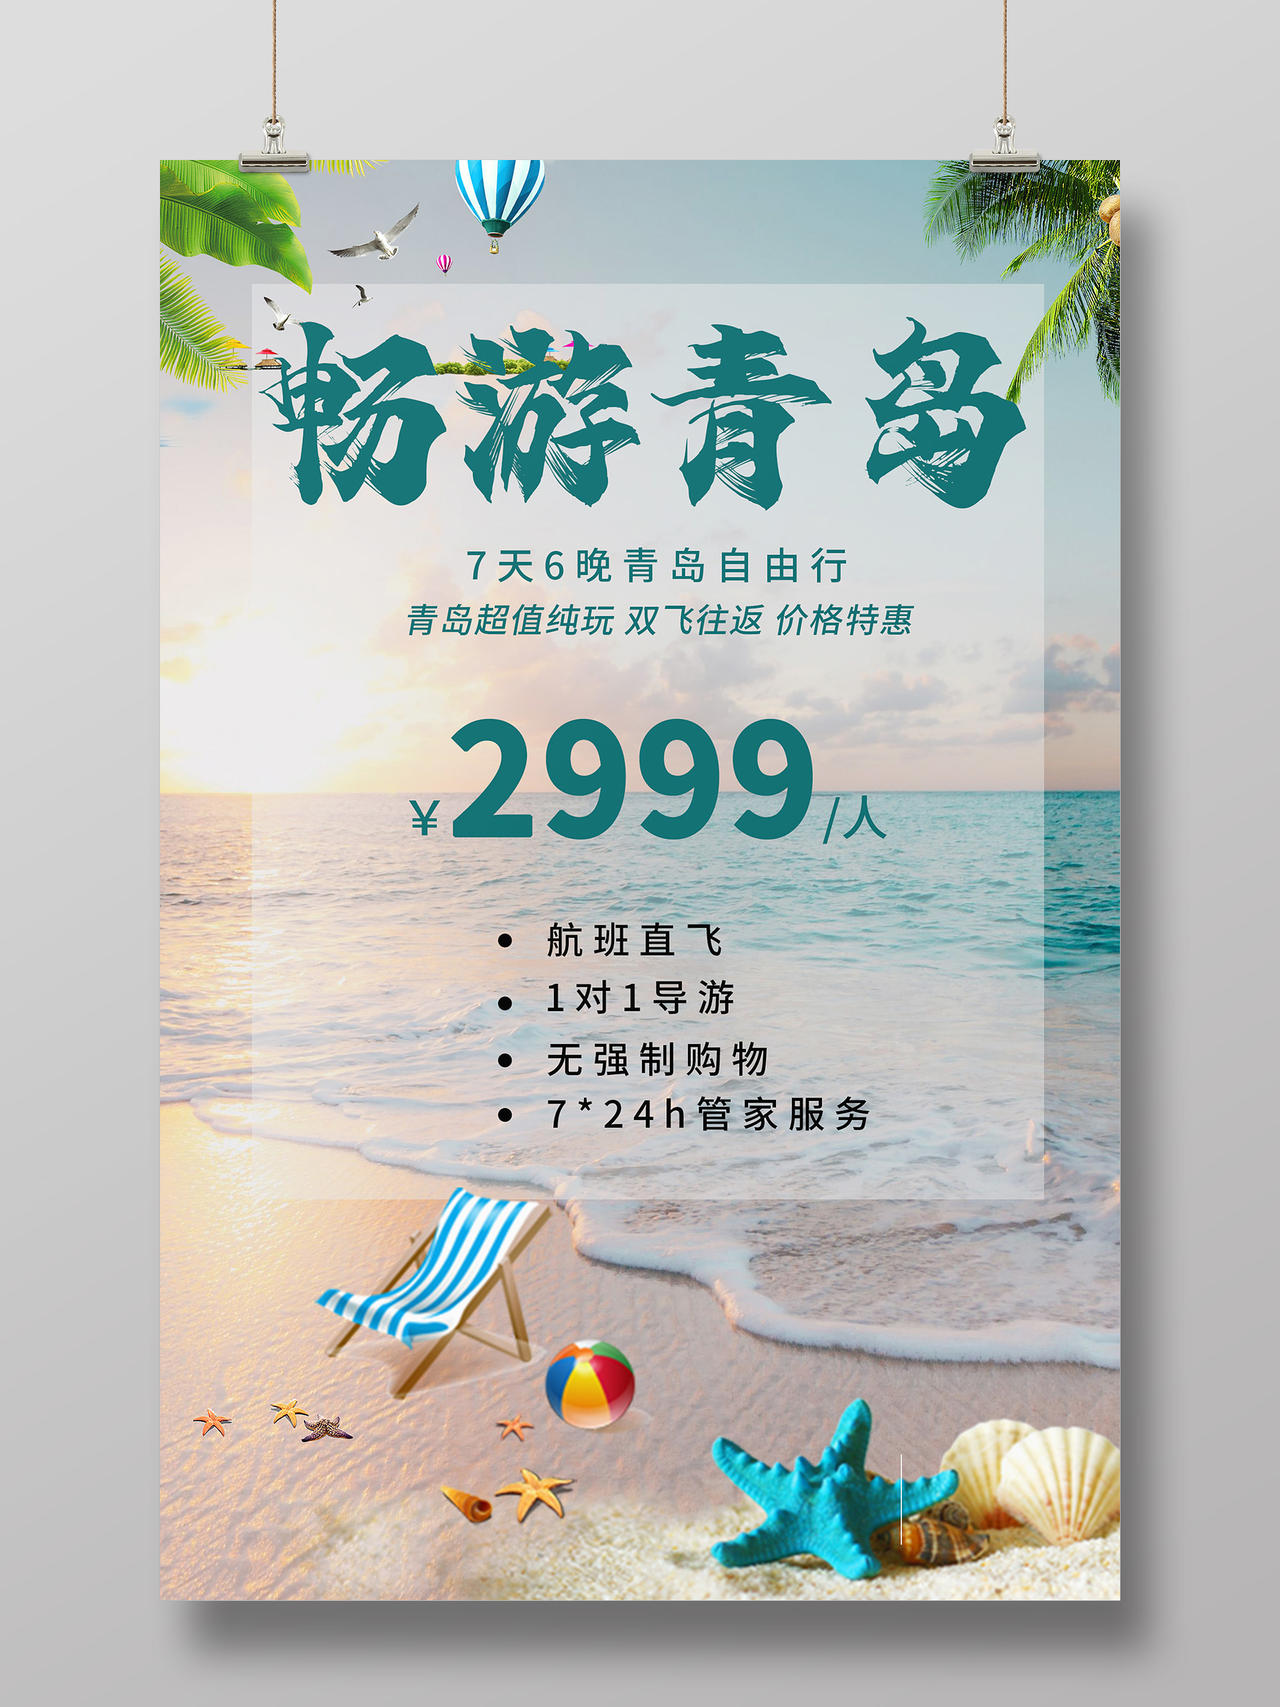 蓝色小清新畅游青岛旅游活动特惠海报